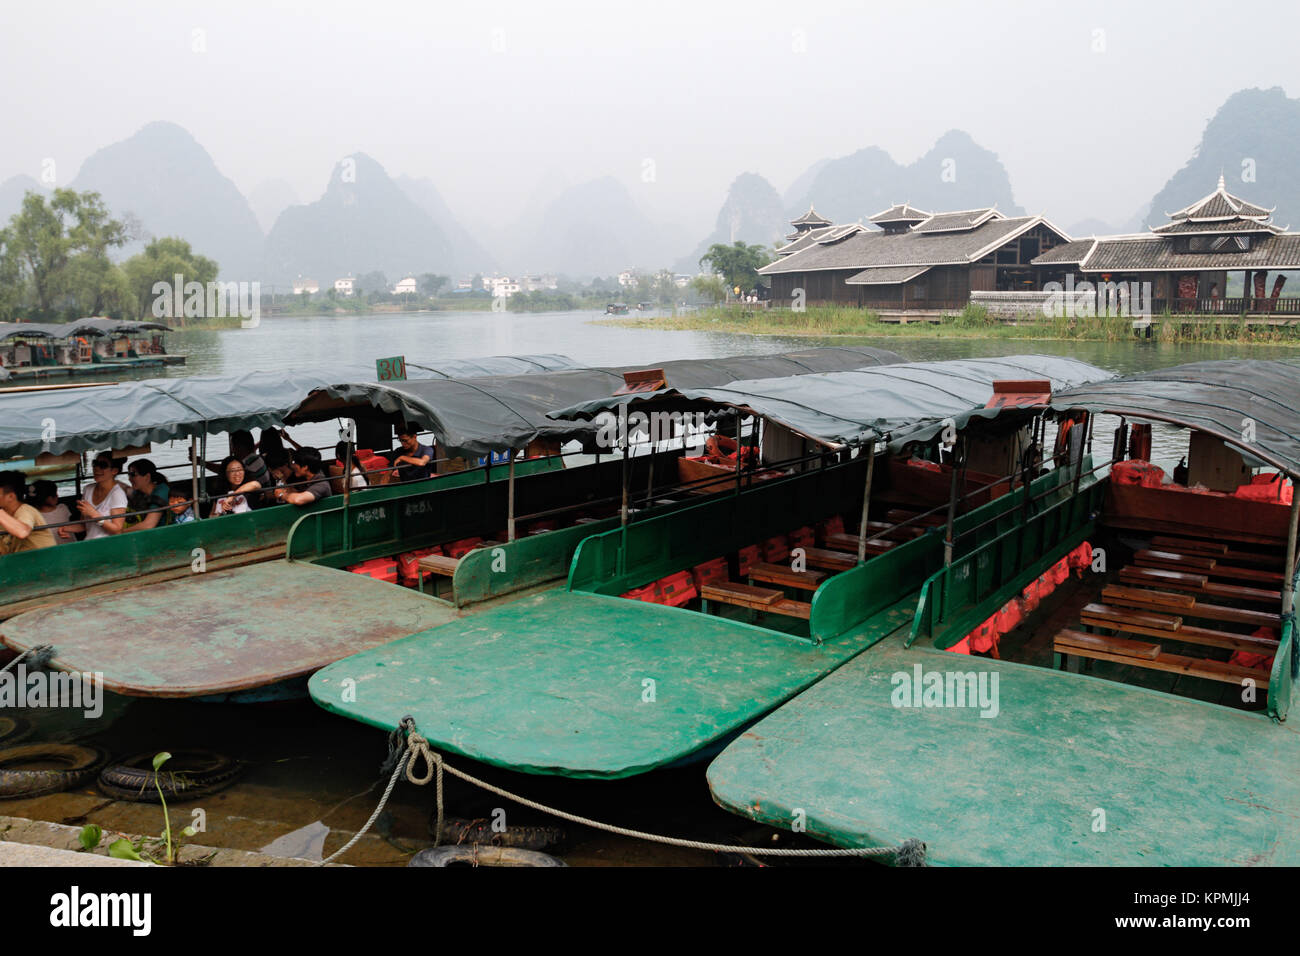 Boats at Shi Wai Tao Yuan - Shangri-La theme park in Yangshuo, Guilin, China Stock Photo